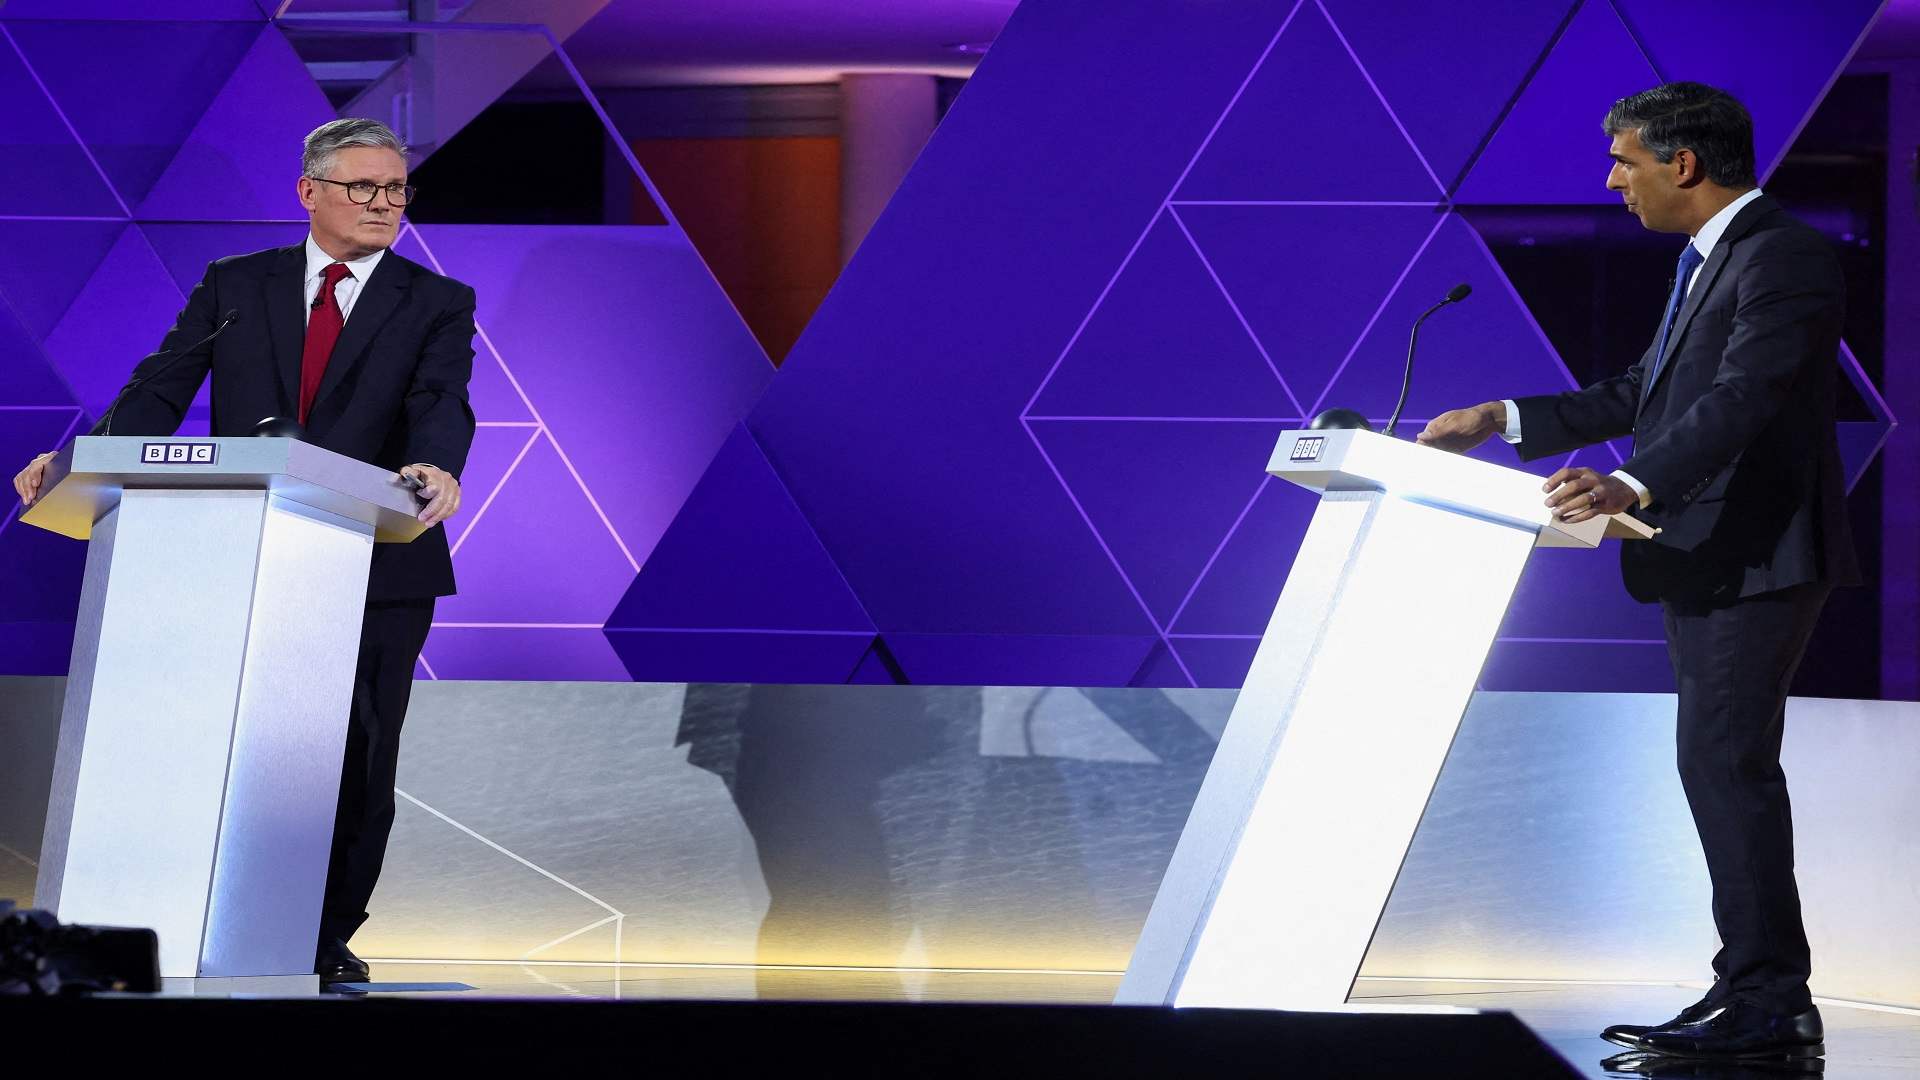 سوناك وستارمر يتواجهان في مناظرة تلفزيونية أخيرة قبل الانتخابات البريطانية